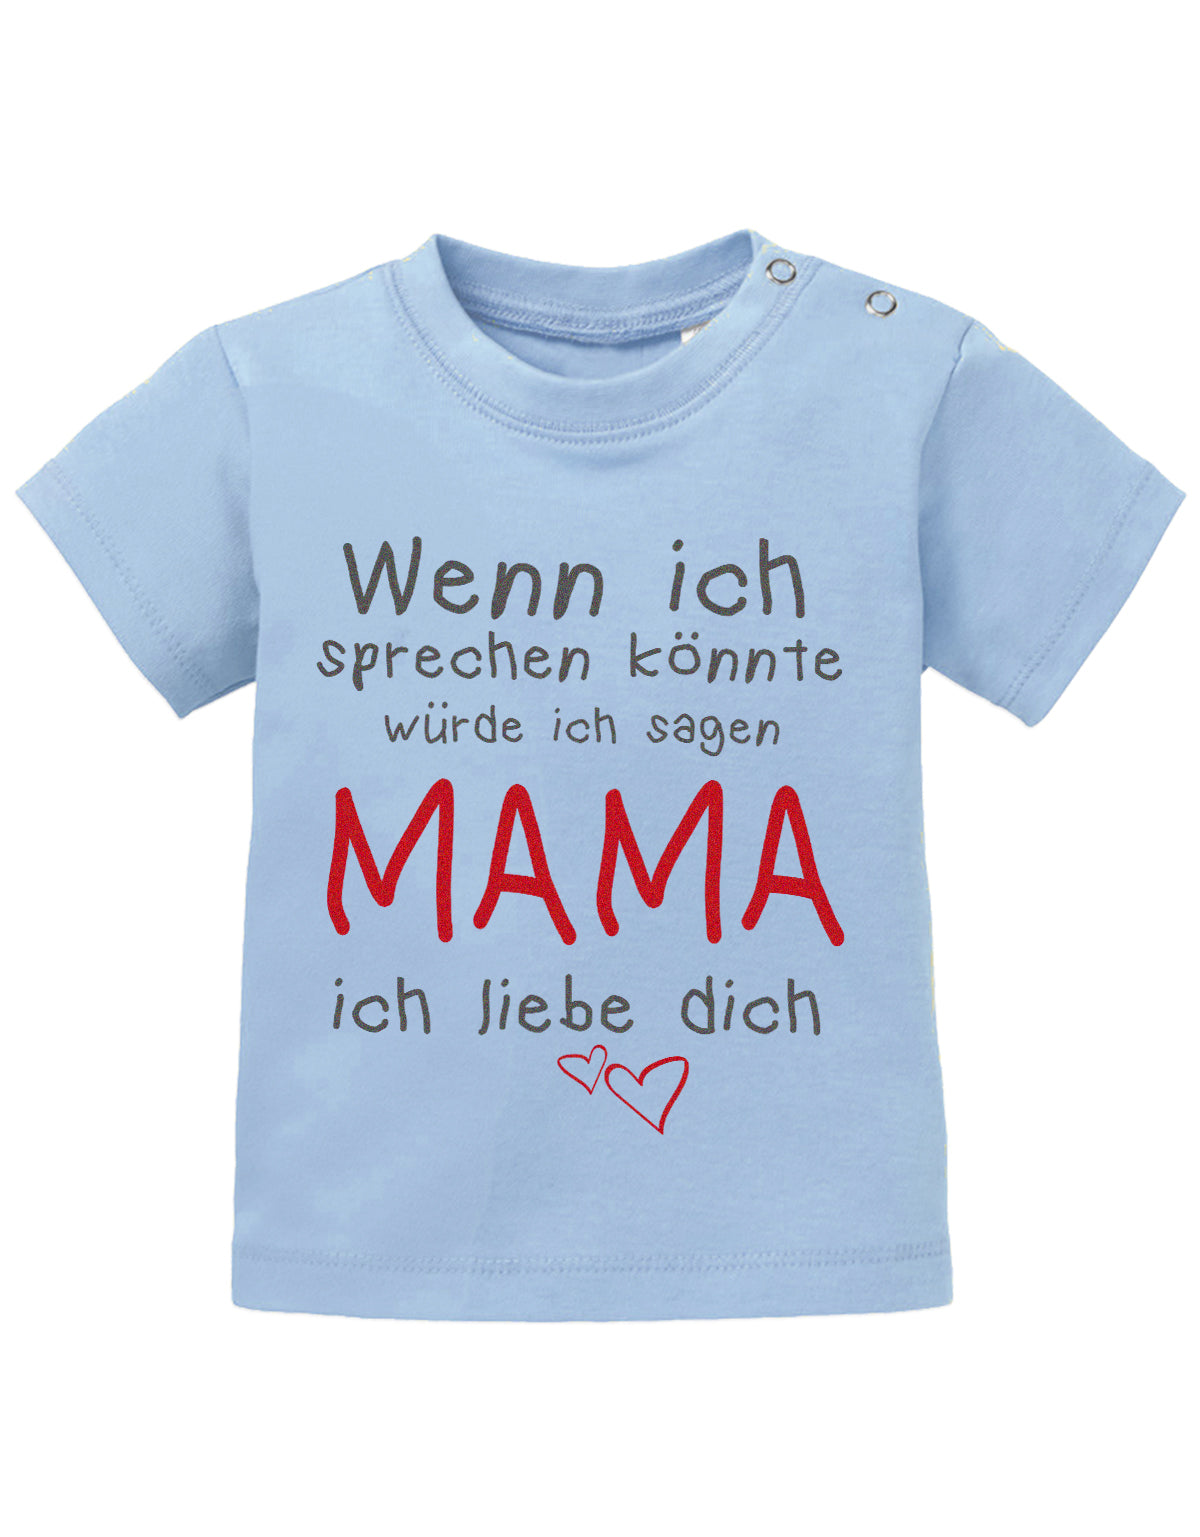 Mama Spruch Baby Shirt. Wenn ich sprechen könnte, würde ich sagen Mama, ich liebe Dich. Hellblau